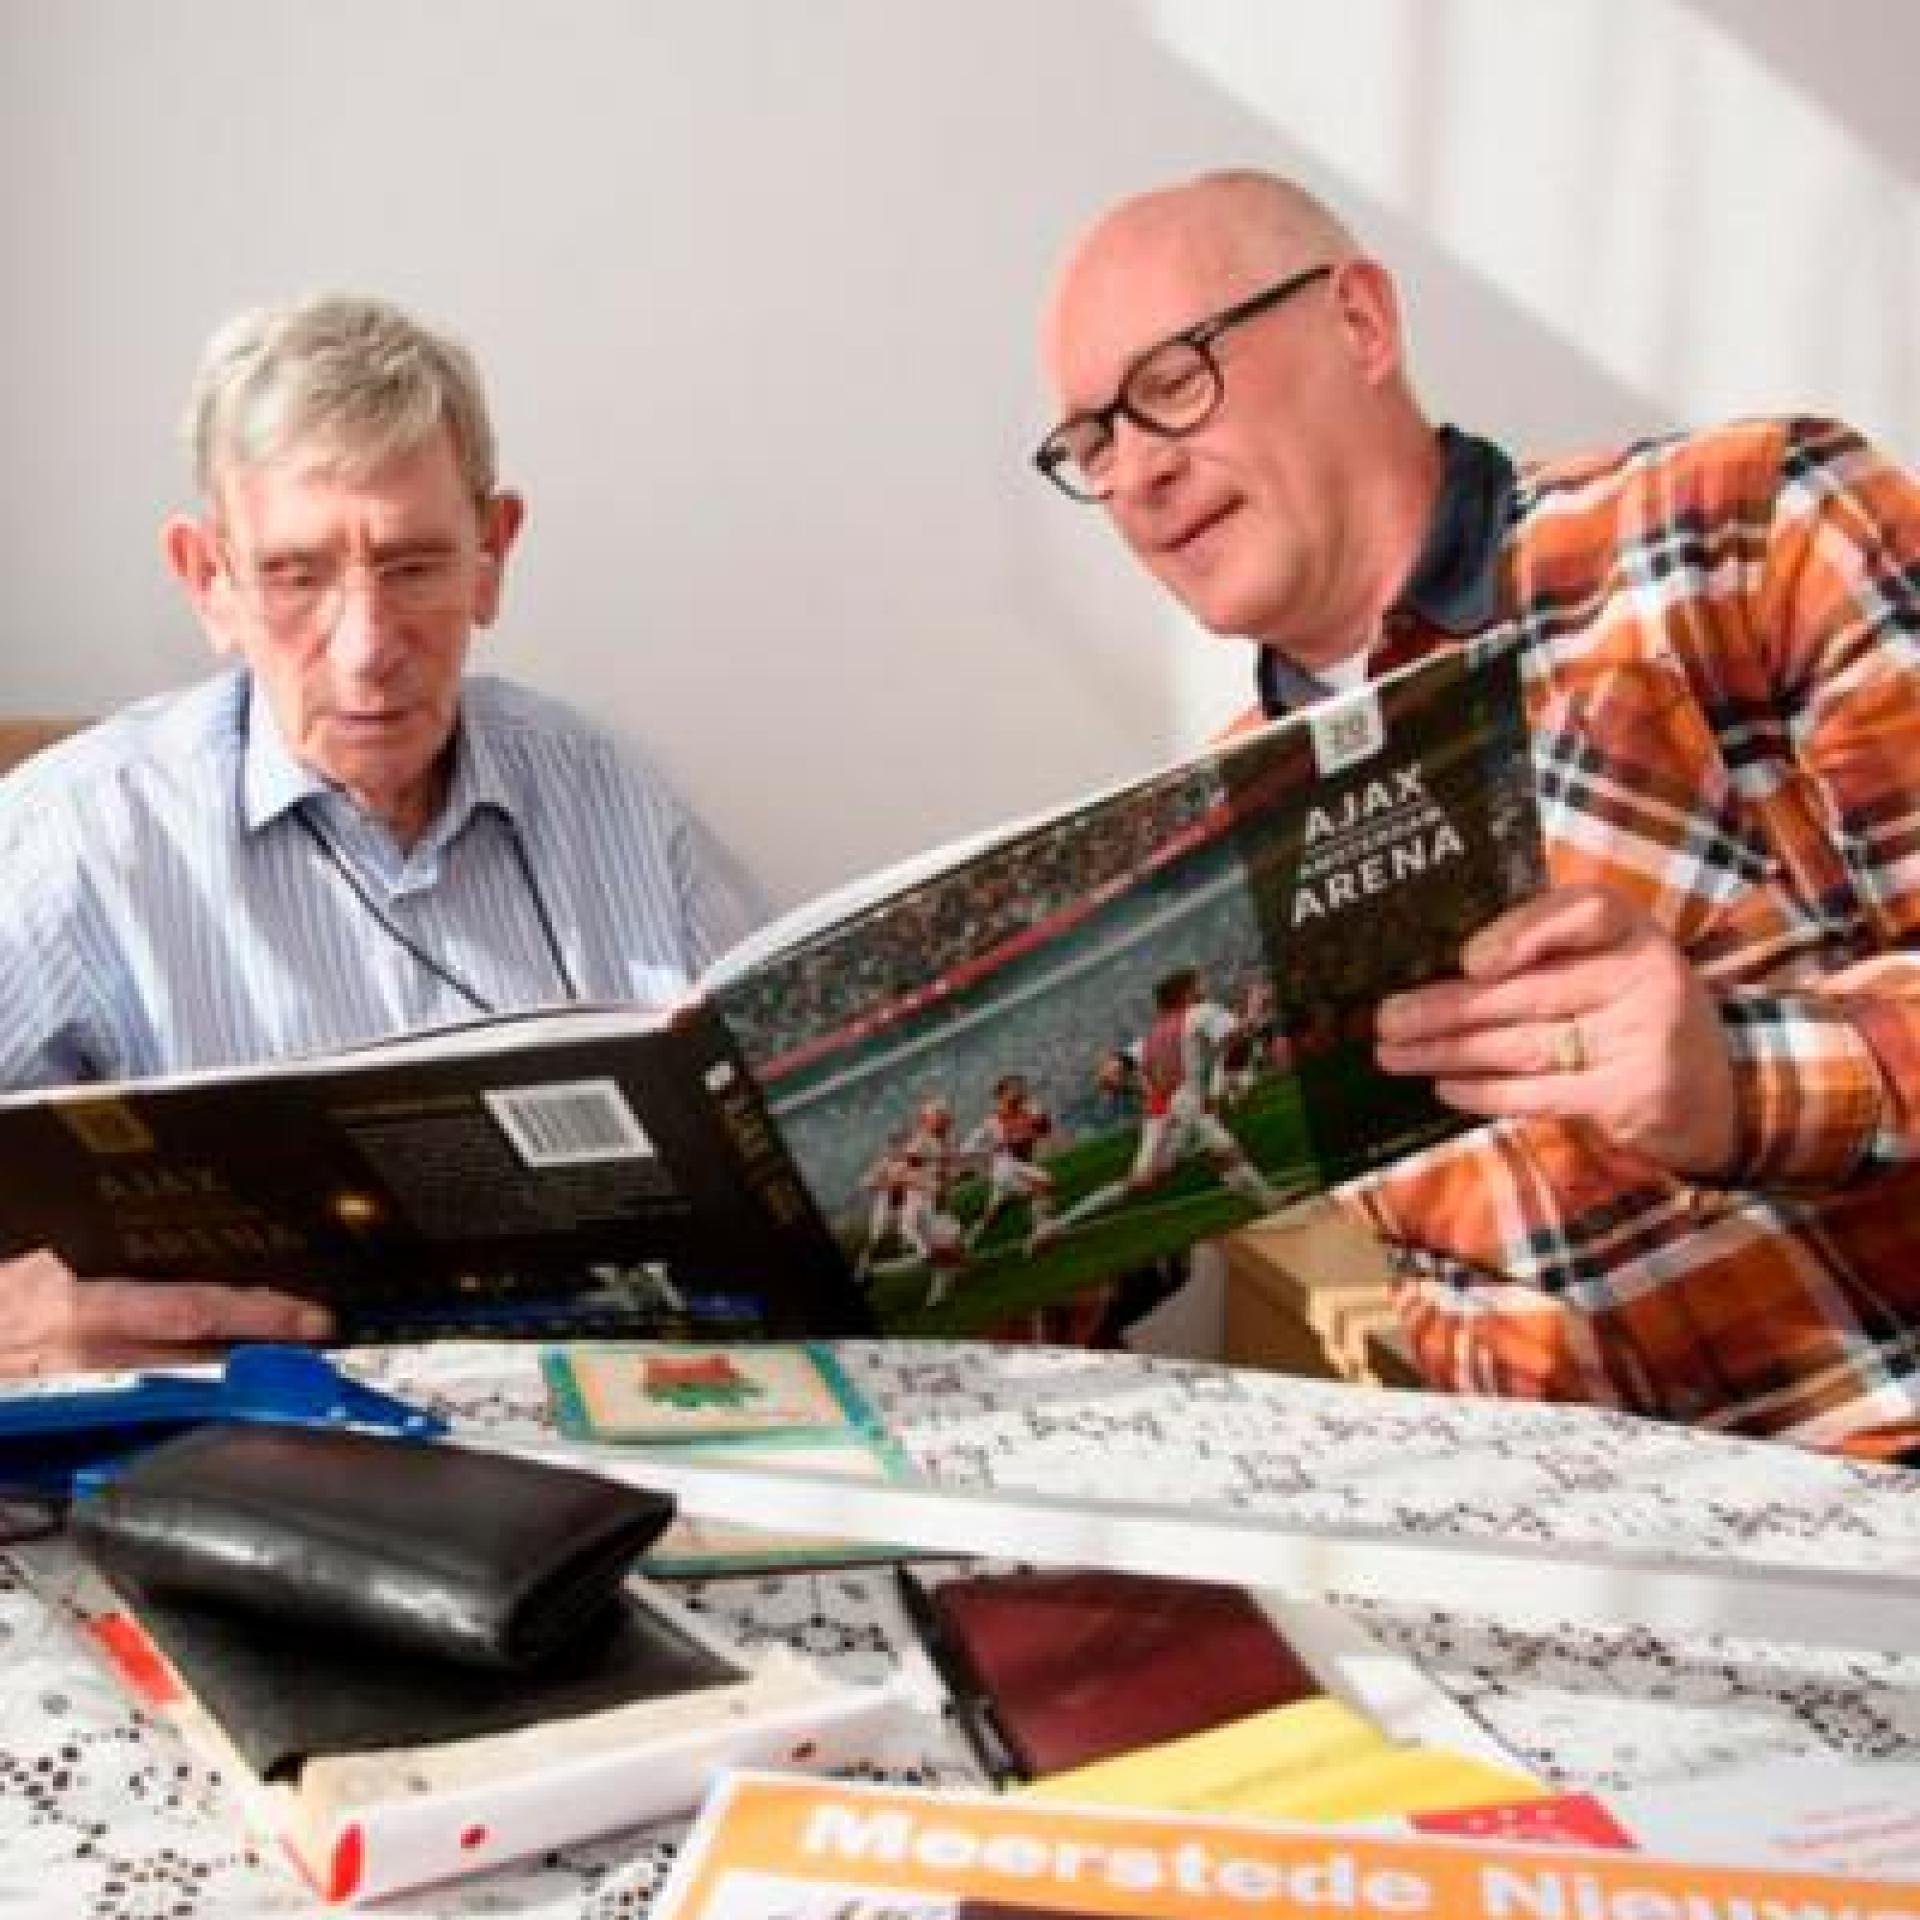 Afbeelding: foto van vrijwilliger Gerrit en maatje Gerrit, samen bekijken ze een voetbalboek